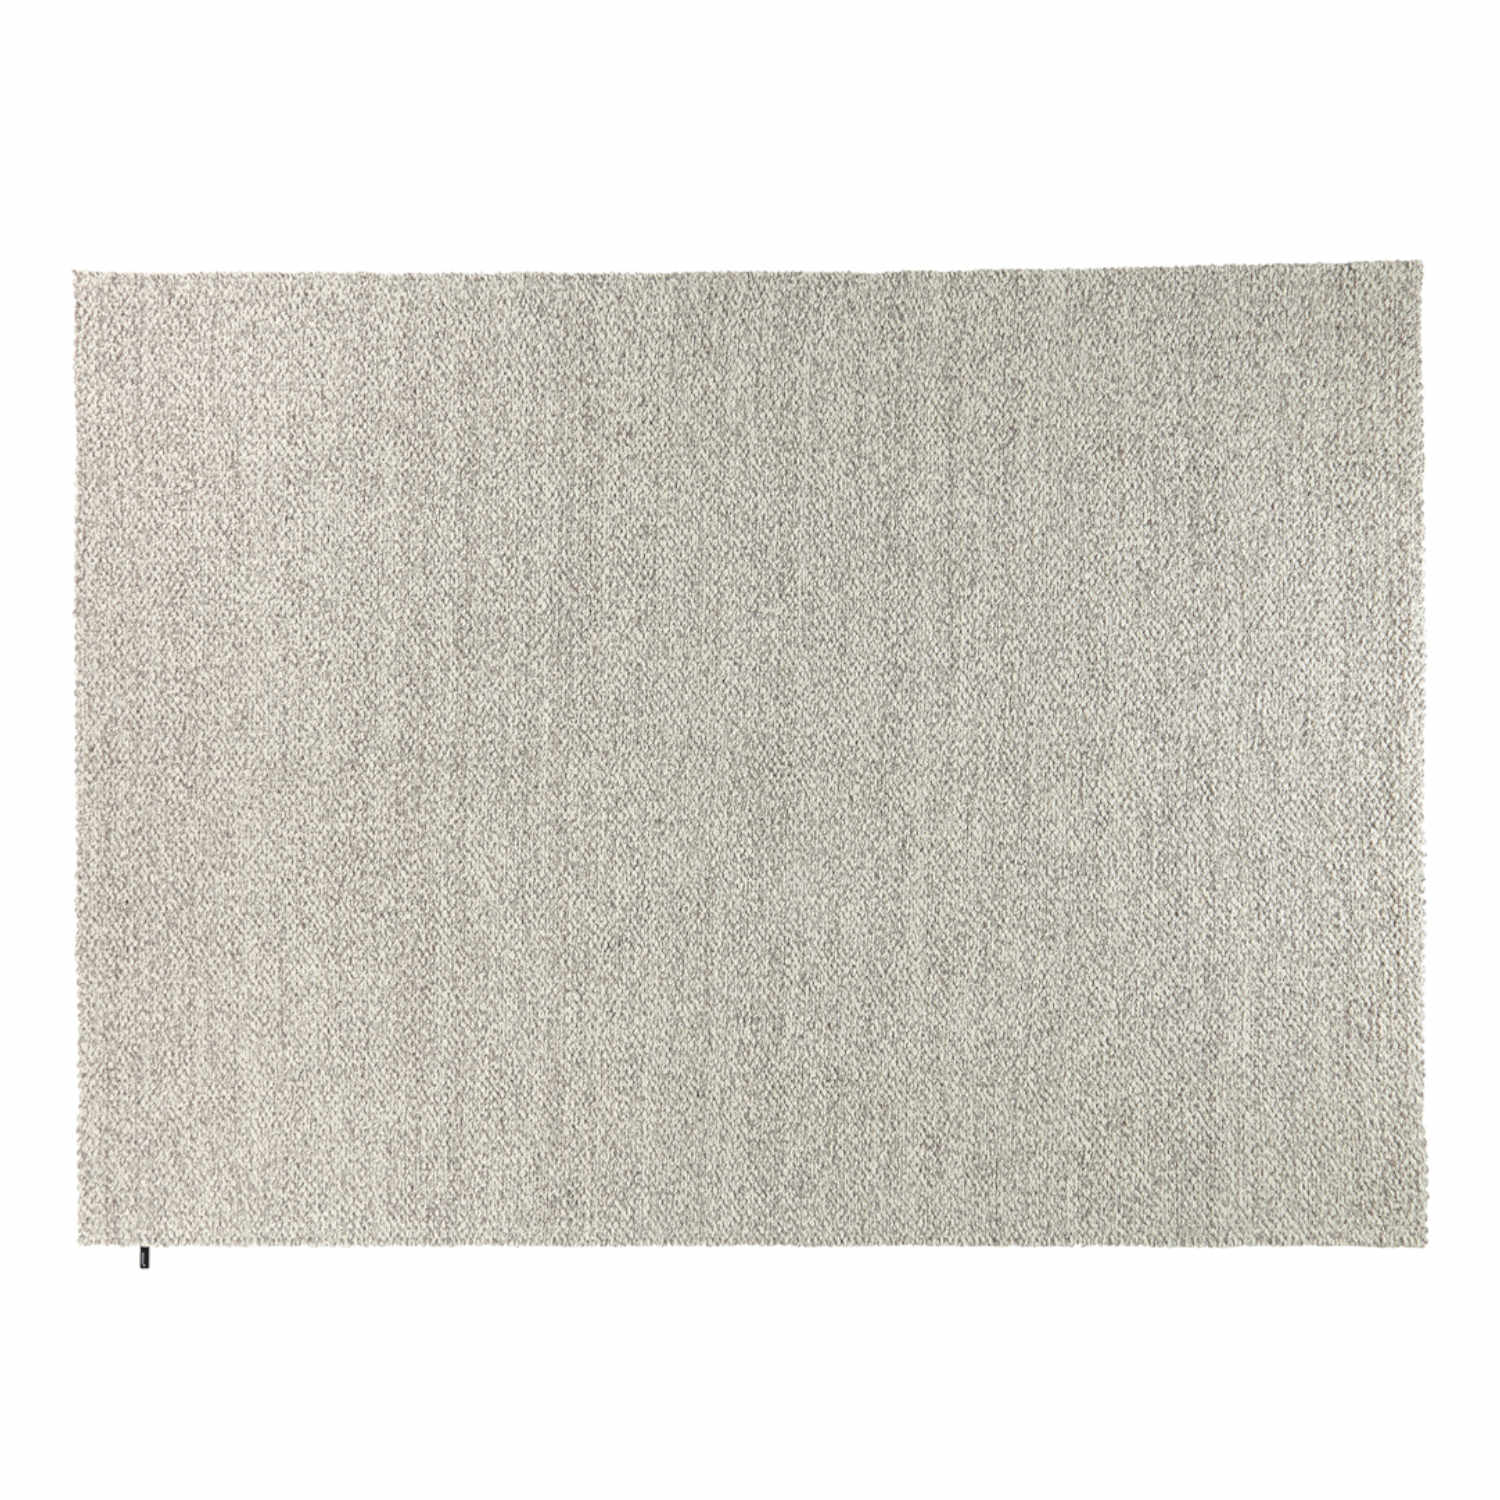 MNU 22 Teppich, Grösse 300 x 400 cm, Farbe granite von miinu